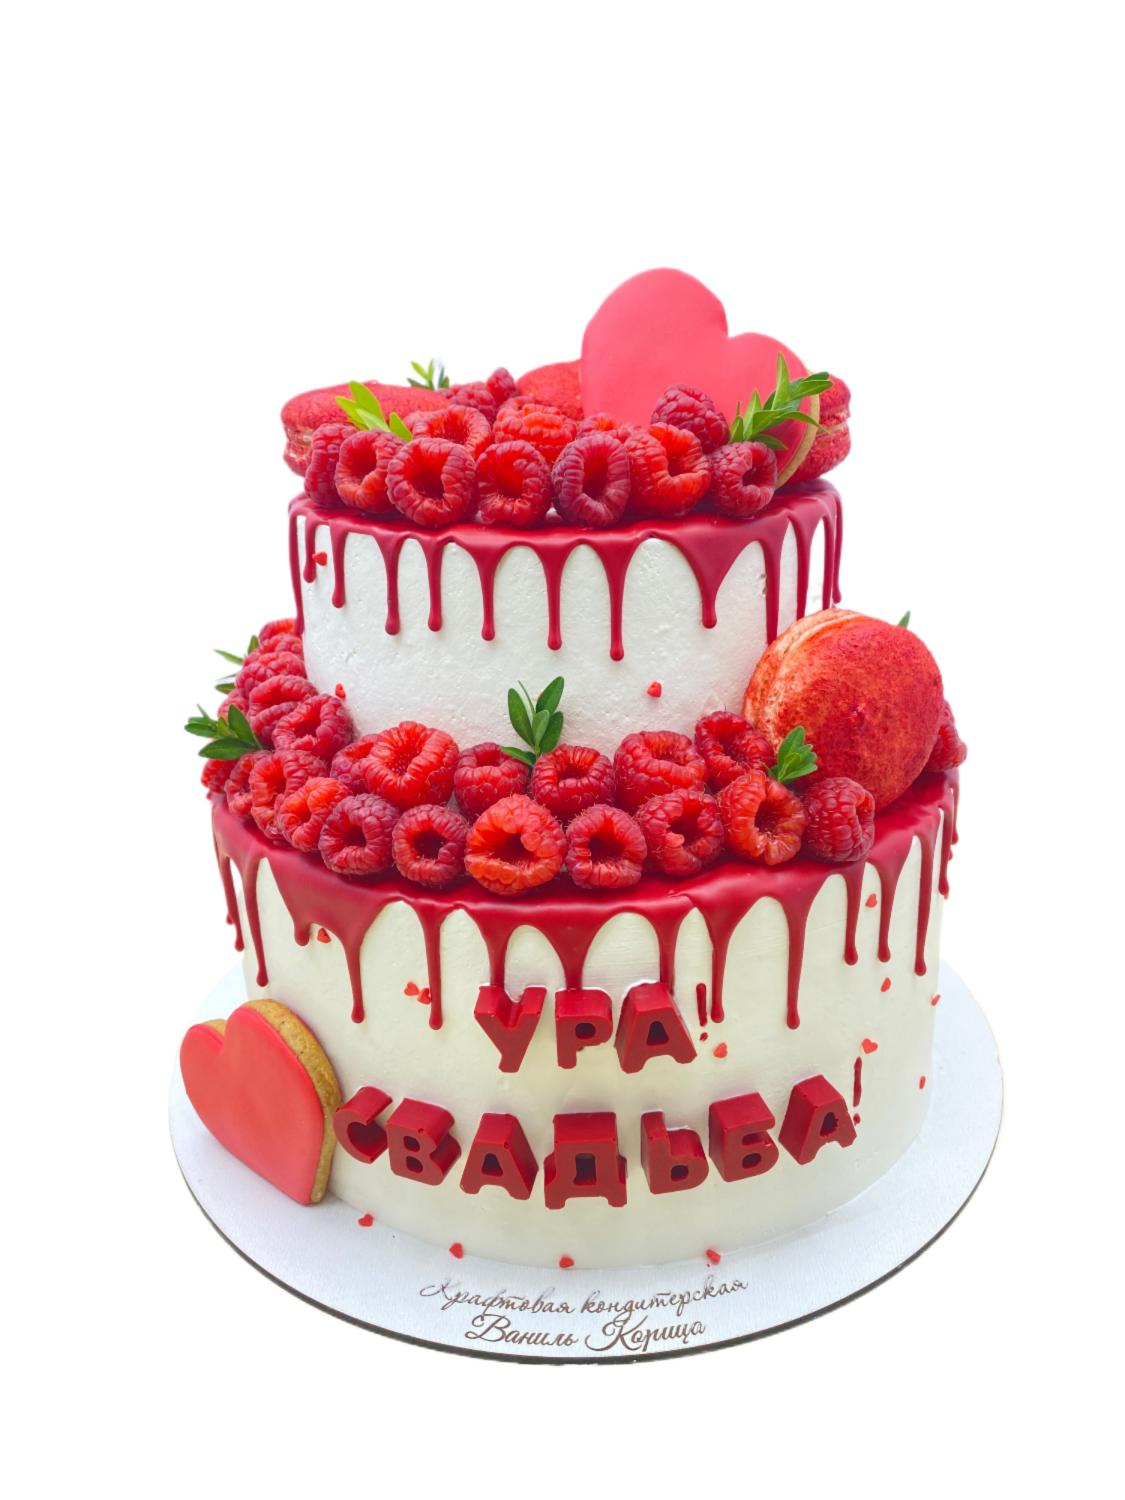 Свадебный двух-ярусный торт #169 в кондитерской cake64.ru фото